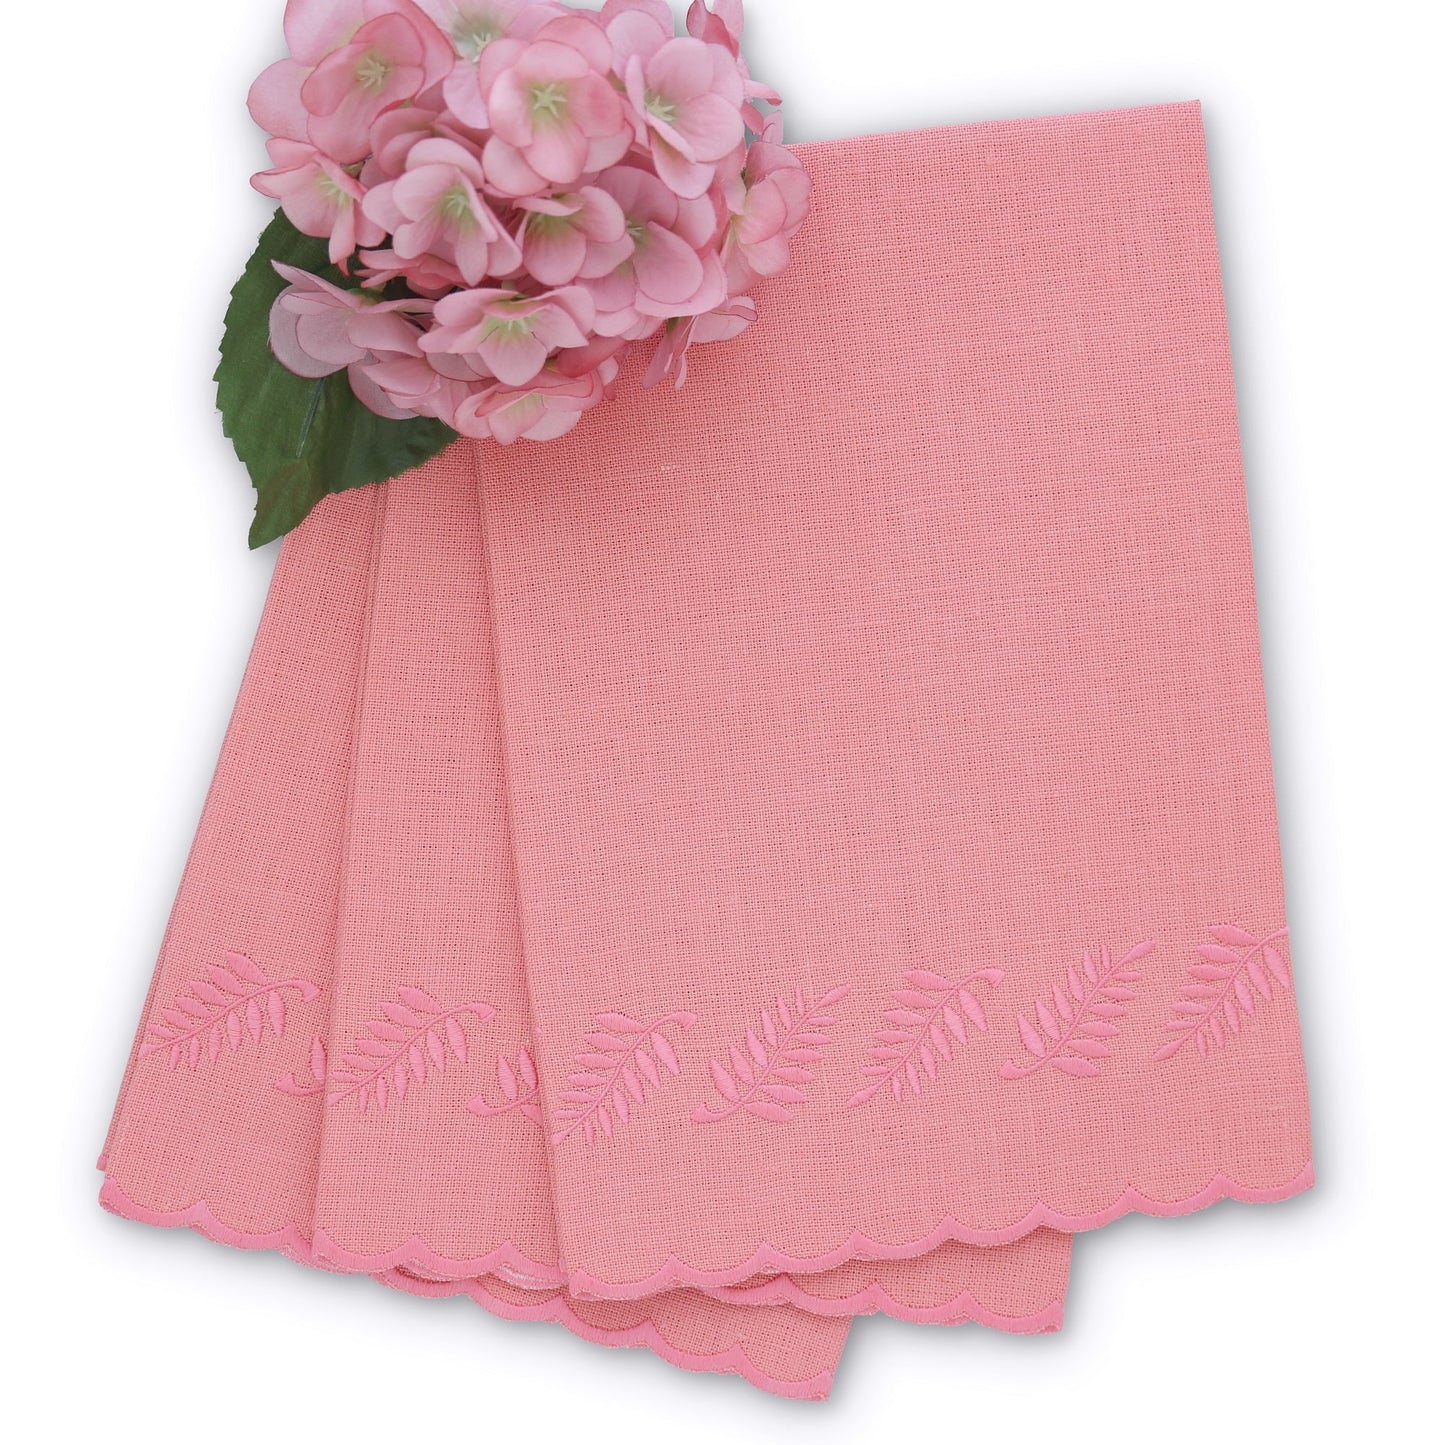 Asciugamano per ospiti in lino smerlato salmone / felce rosa (ciascuno)